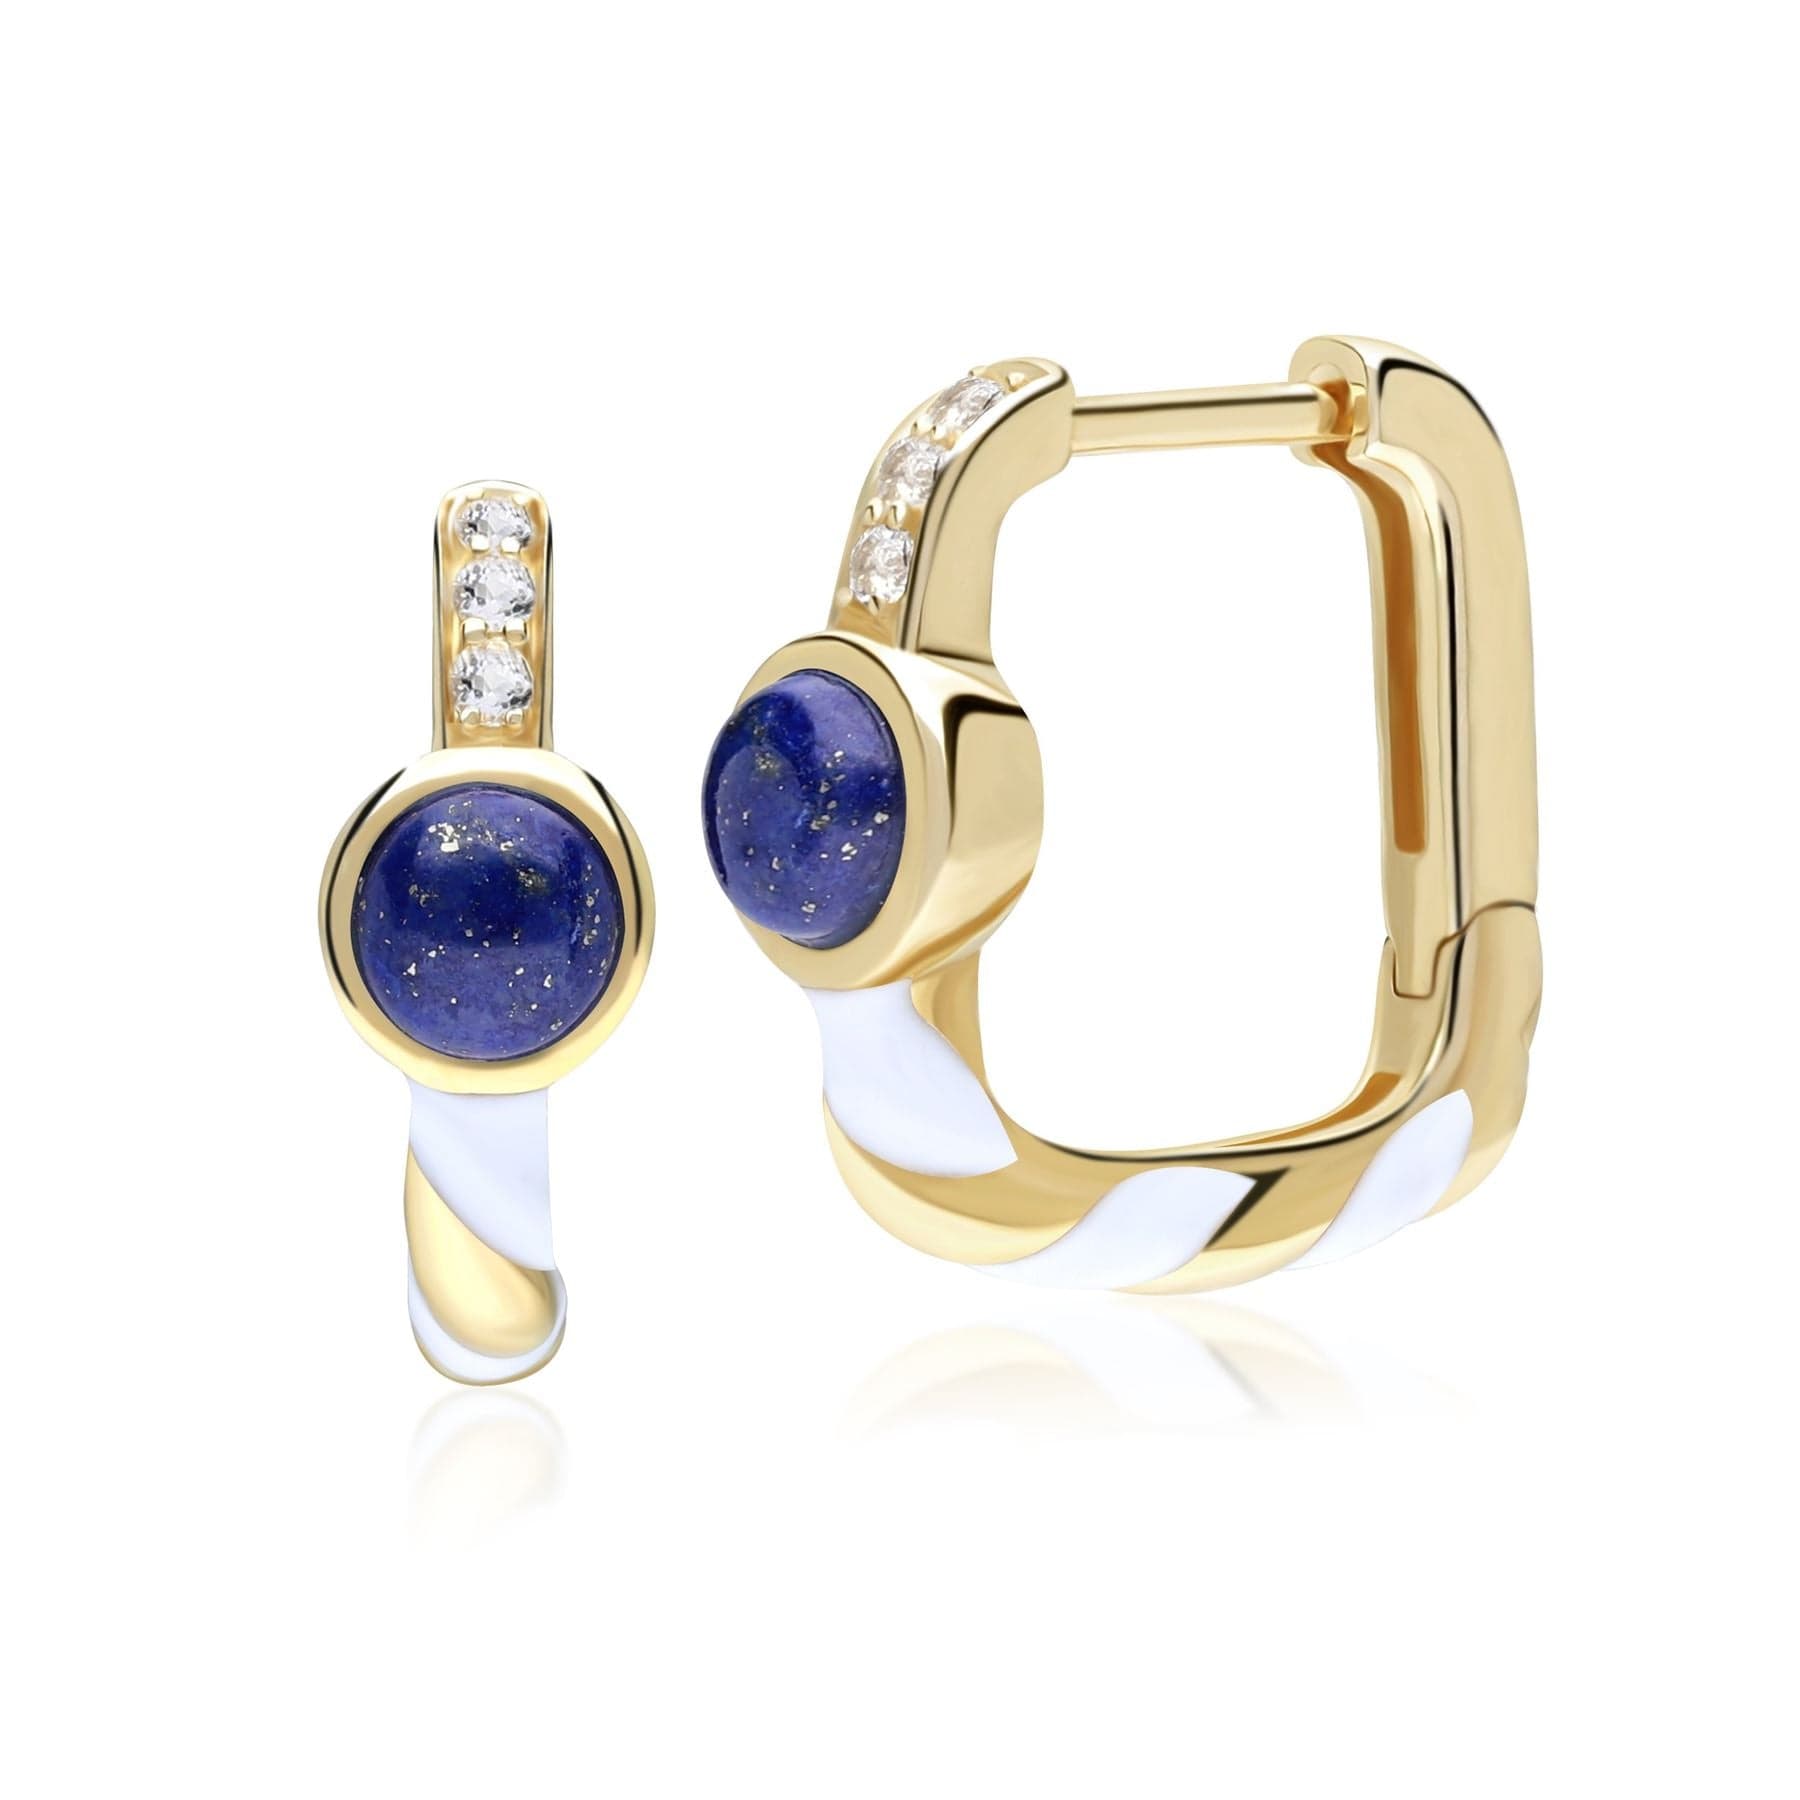 Siberian Waltz Enamel & Lapis Lazuli Square Hoop Earrings in Gold Plated Silver